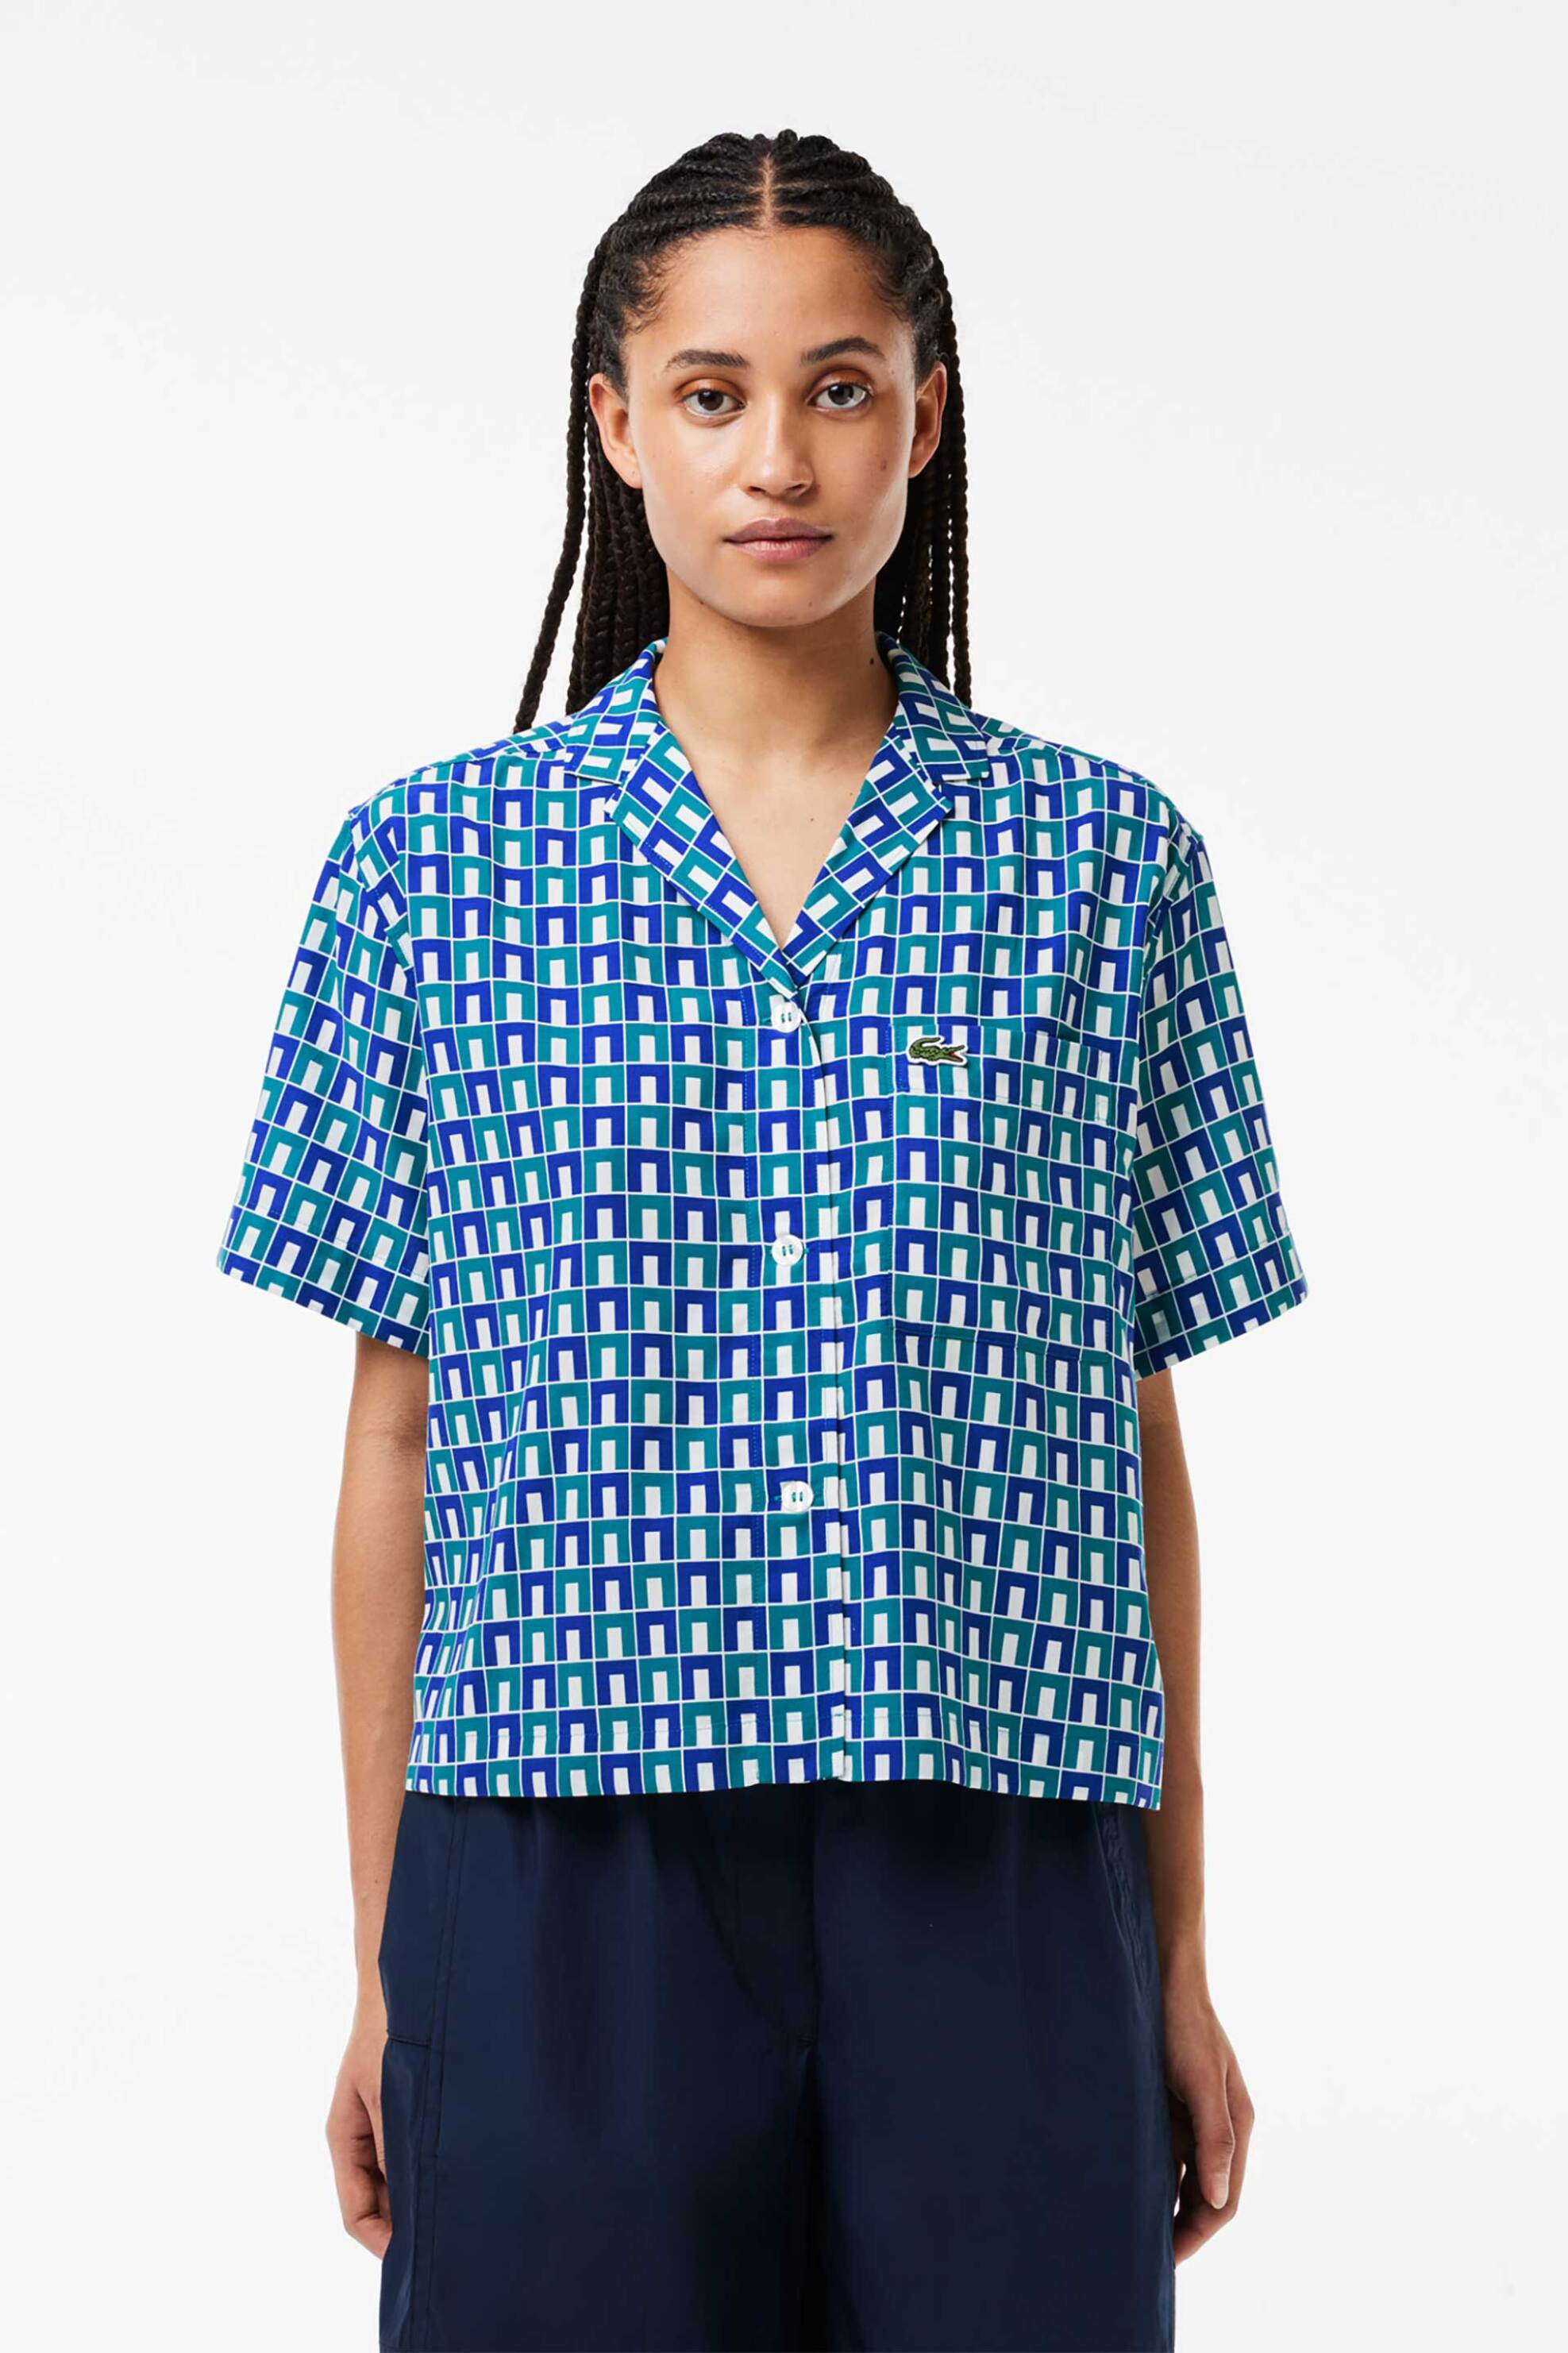 Γυναικεία Ρούχα & Αξεσουάρ > Γυναικεία Ρούχα > Γυναικεία Πουκάμισα > Γυναικεία Πουκάμισα Casual Lacoste γυναικείο cropped πουκάμισο με all-over contrast geometric pattern - CF6910 Μπλε